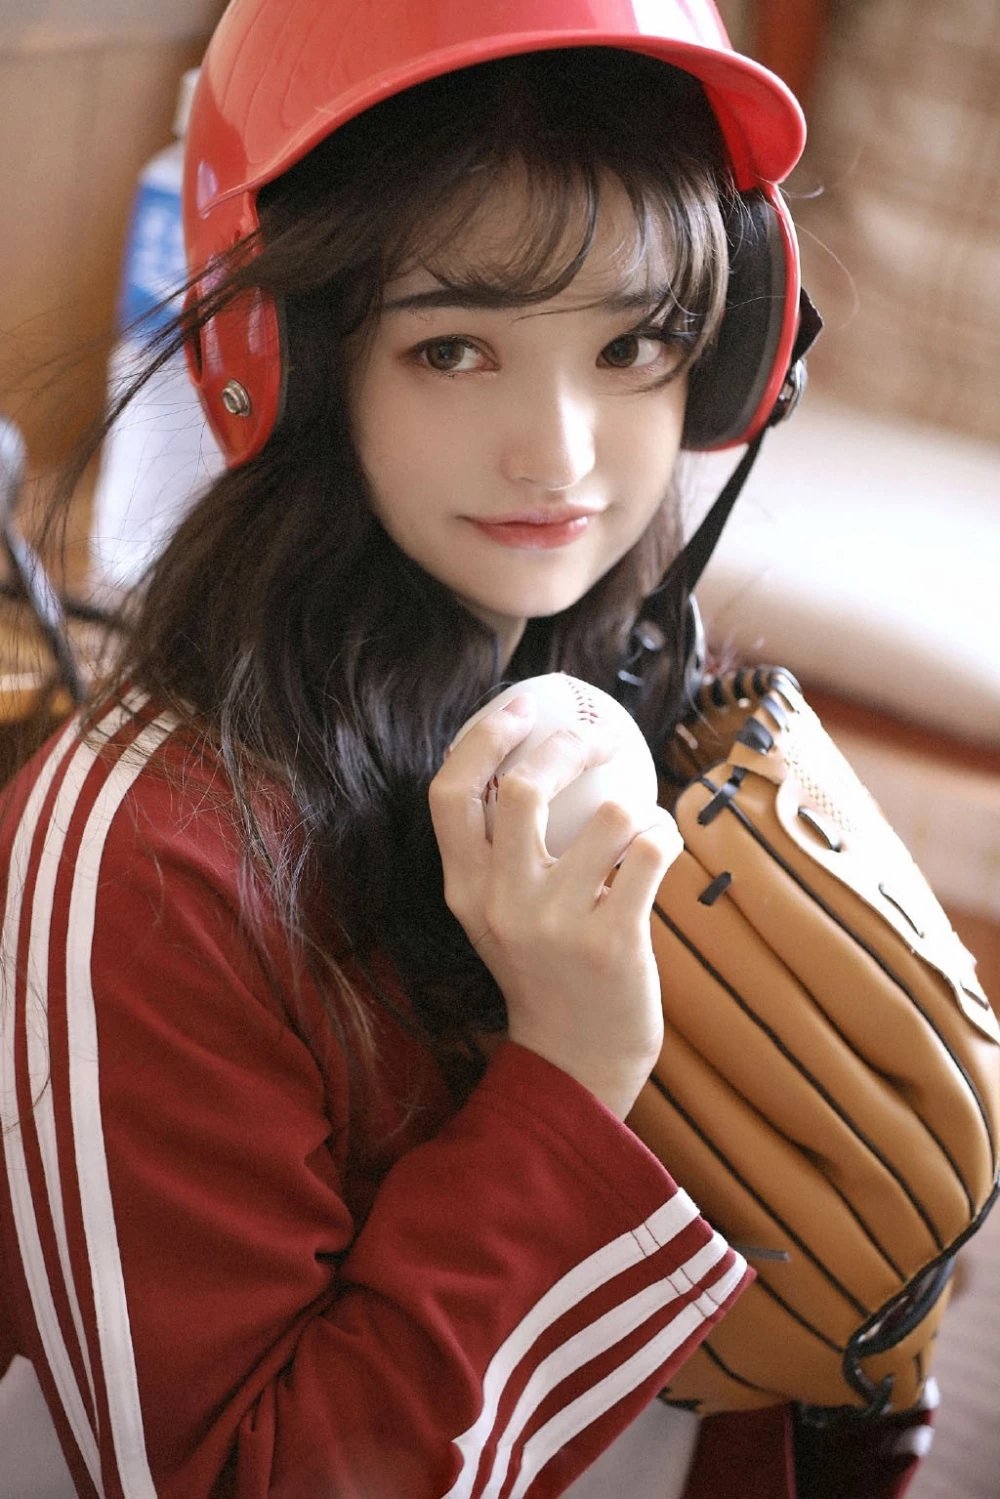 甜美韩系少女棒球服居家唯美摄影图片